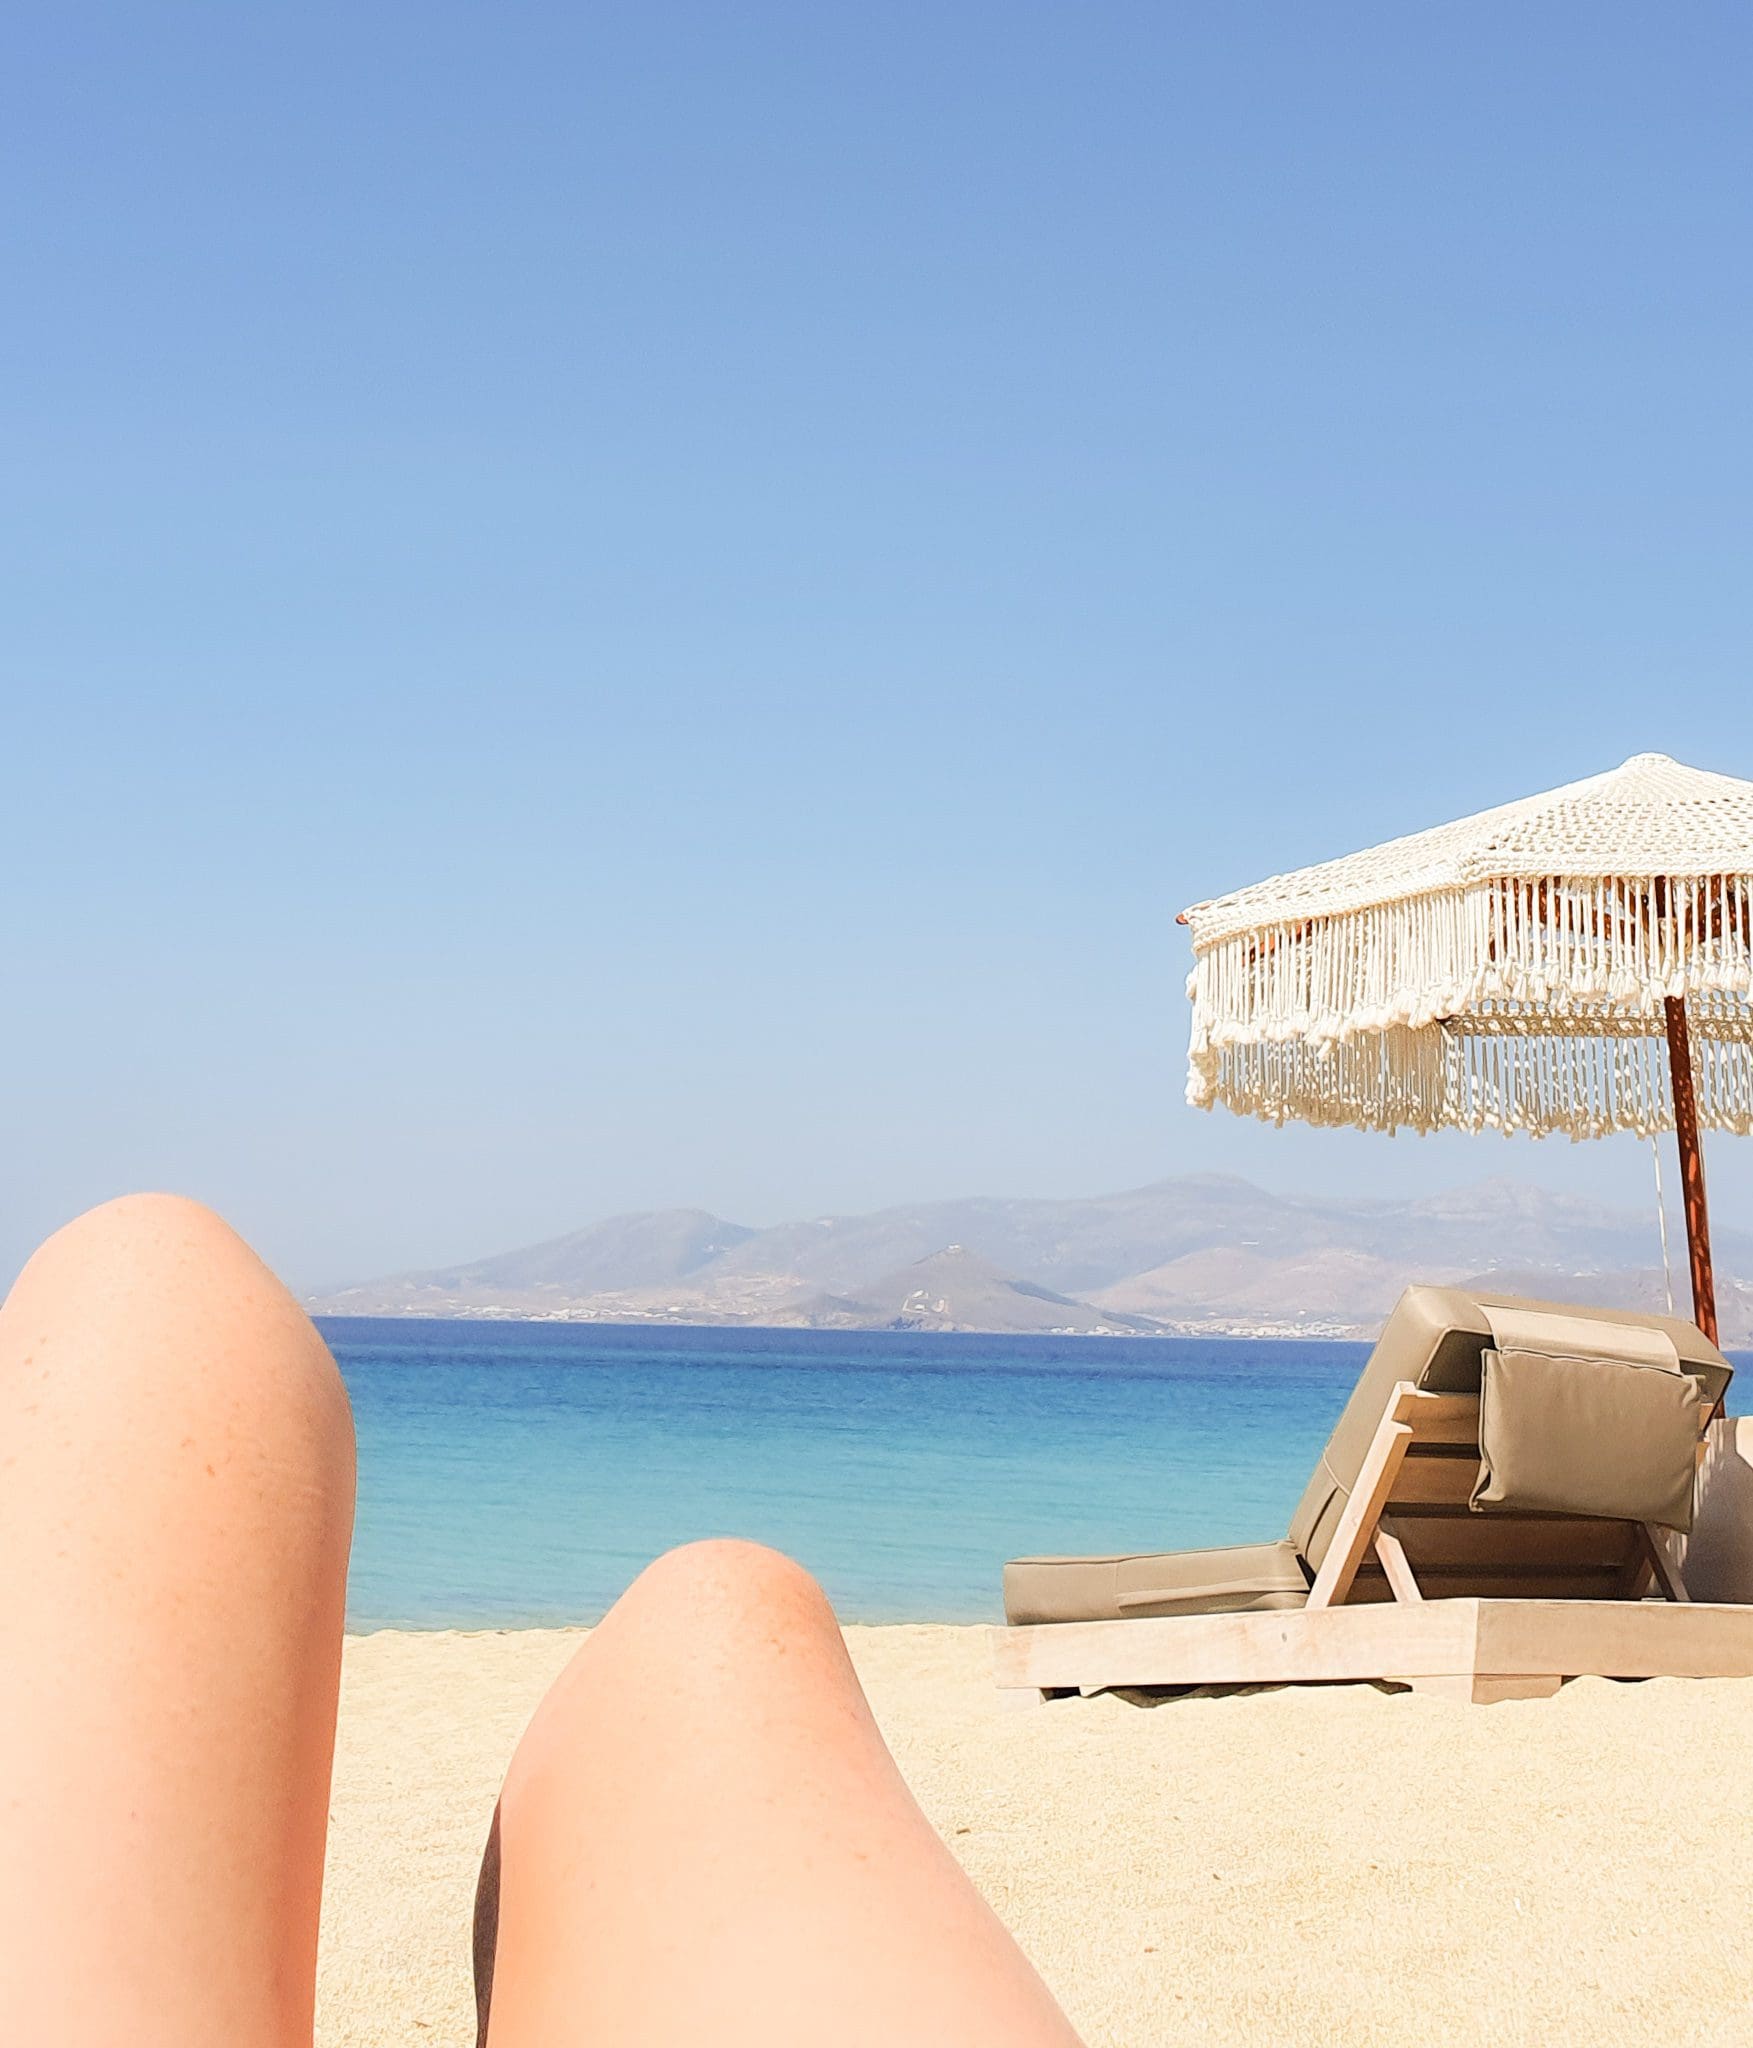 Sunbaking on Agios Prokopios beach, Naxos